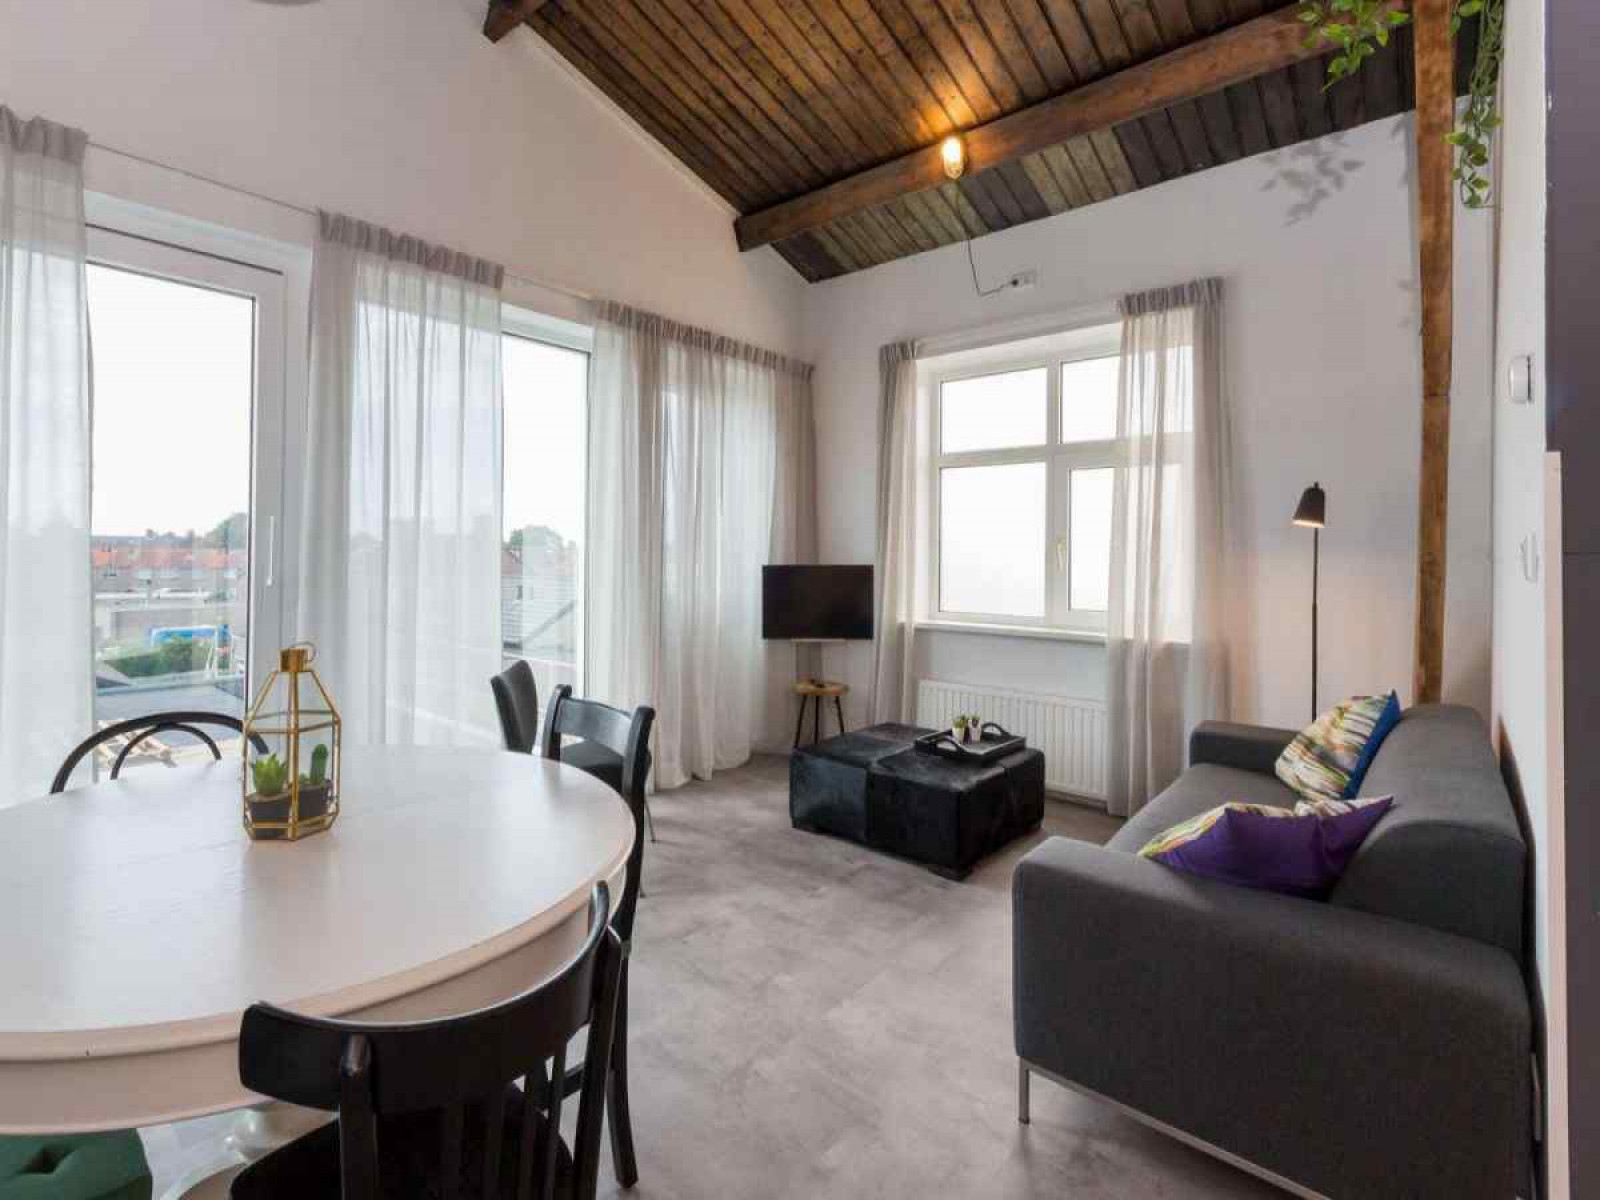 Luxe 4 persoons appartement in Koudekerke - Nederland - Europa - Koudekerke